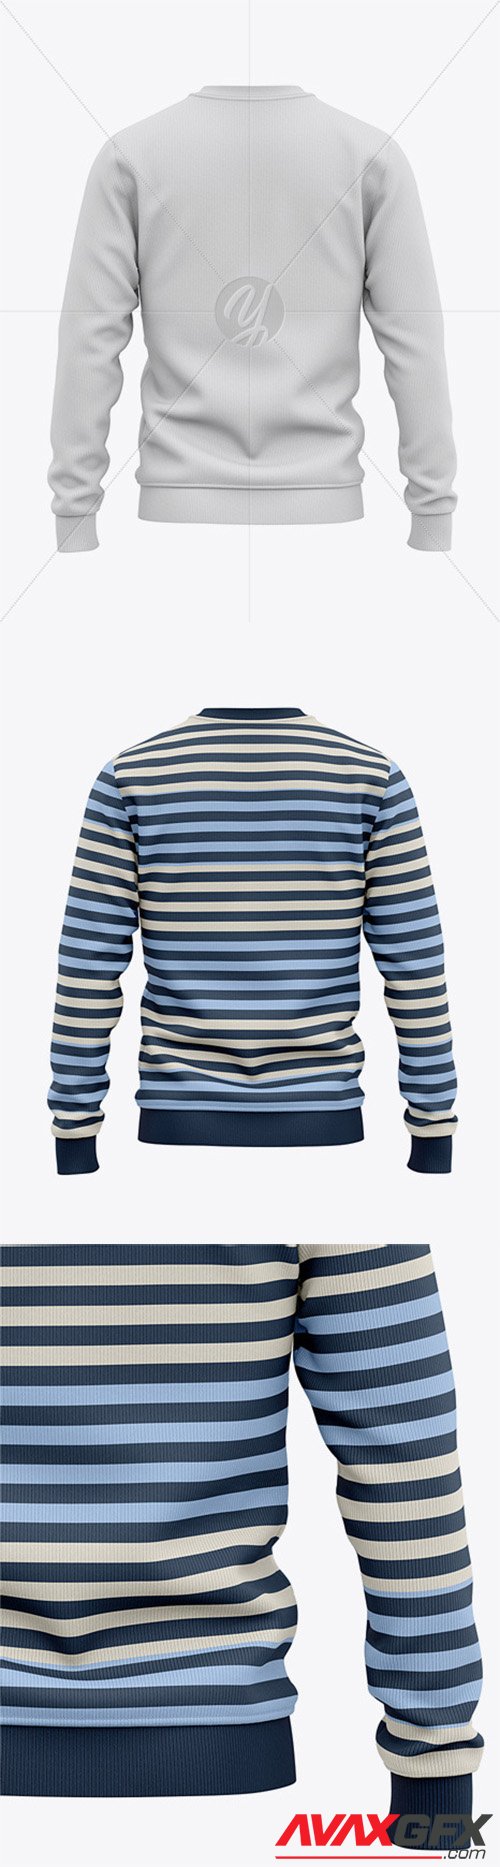 Download Men's Sweatshirt Mockup - Back View Of Sweater 55660 ...